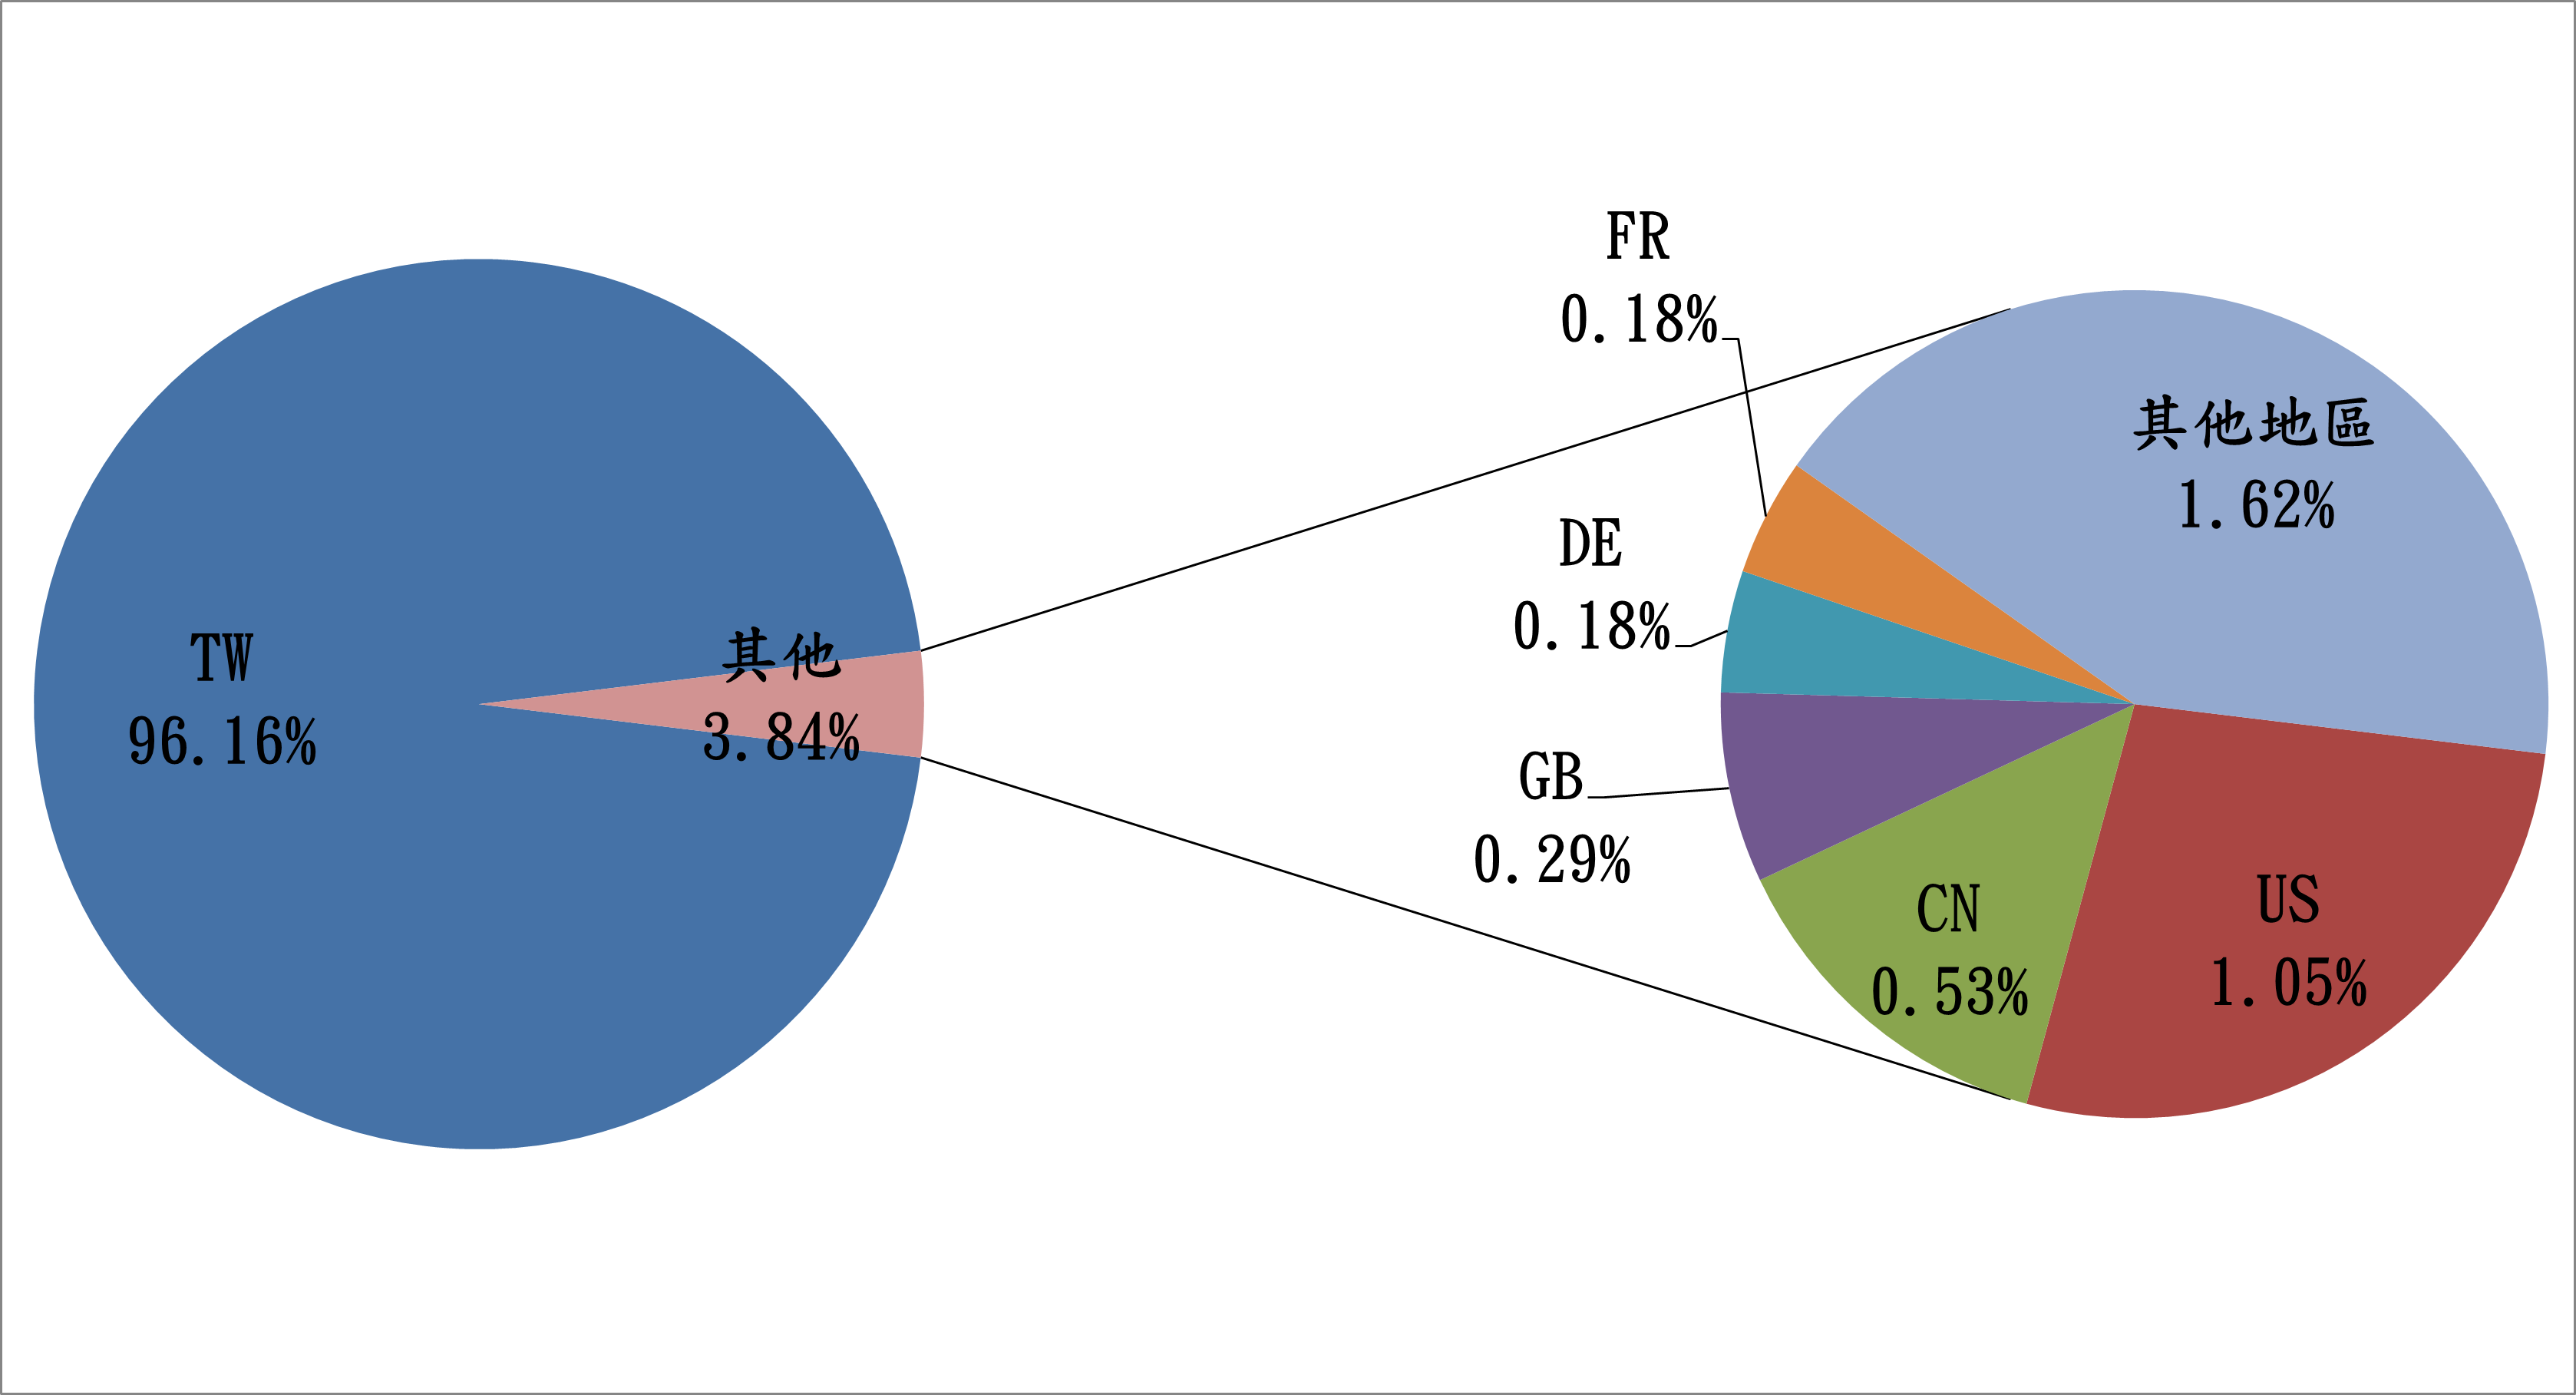 TW96.16% 其他3.84% FR0.18% DE0.18% GB0.29% CN0.53% US1.05% 其他地區1.62%